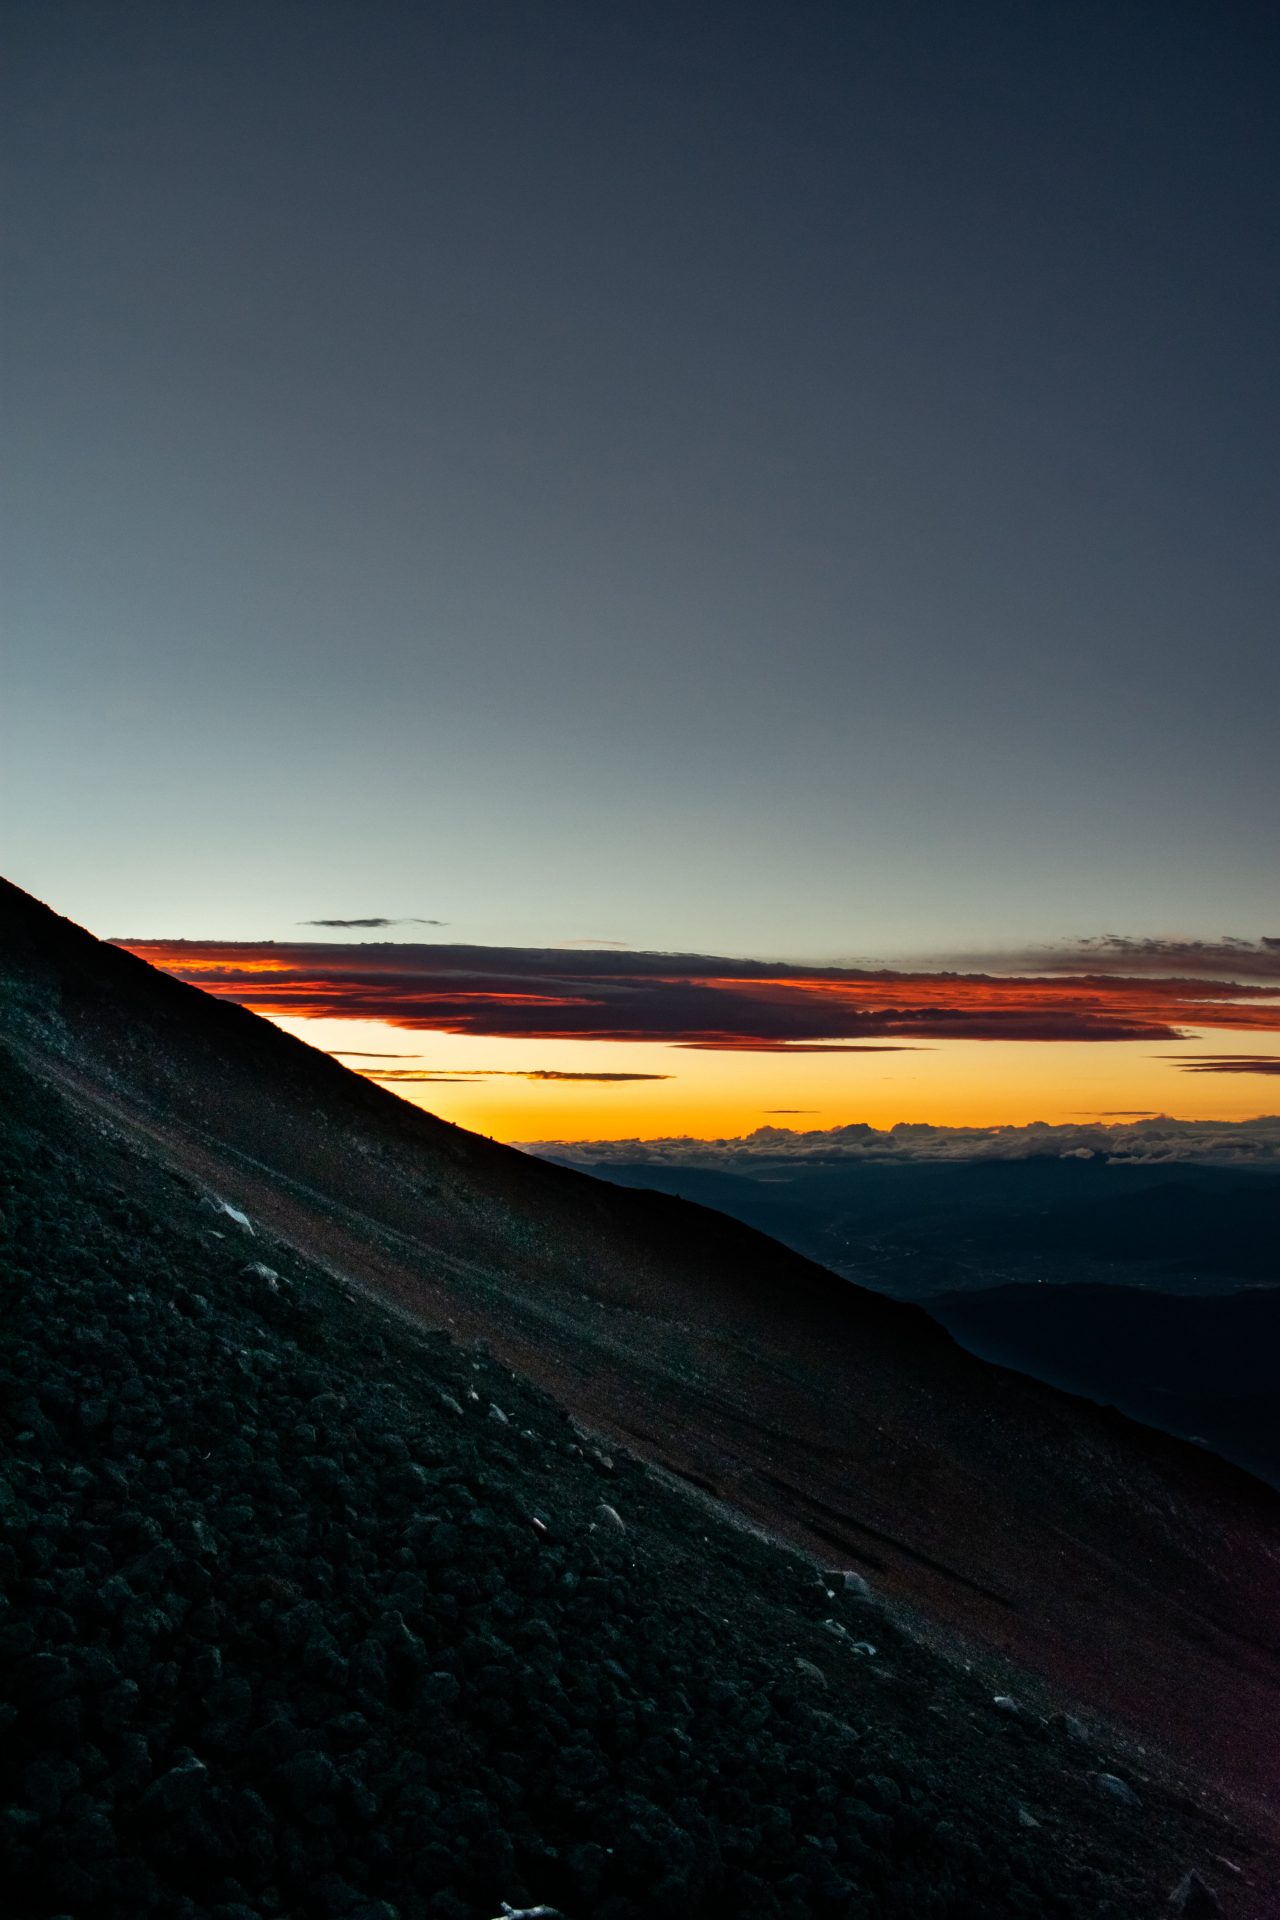 Sunset while climbing mount Fuji